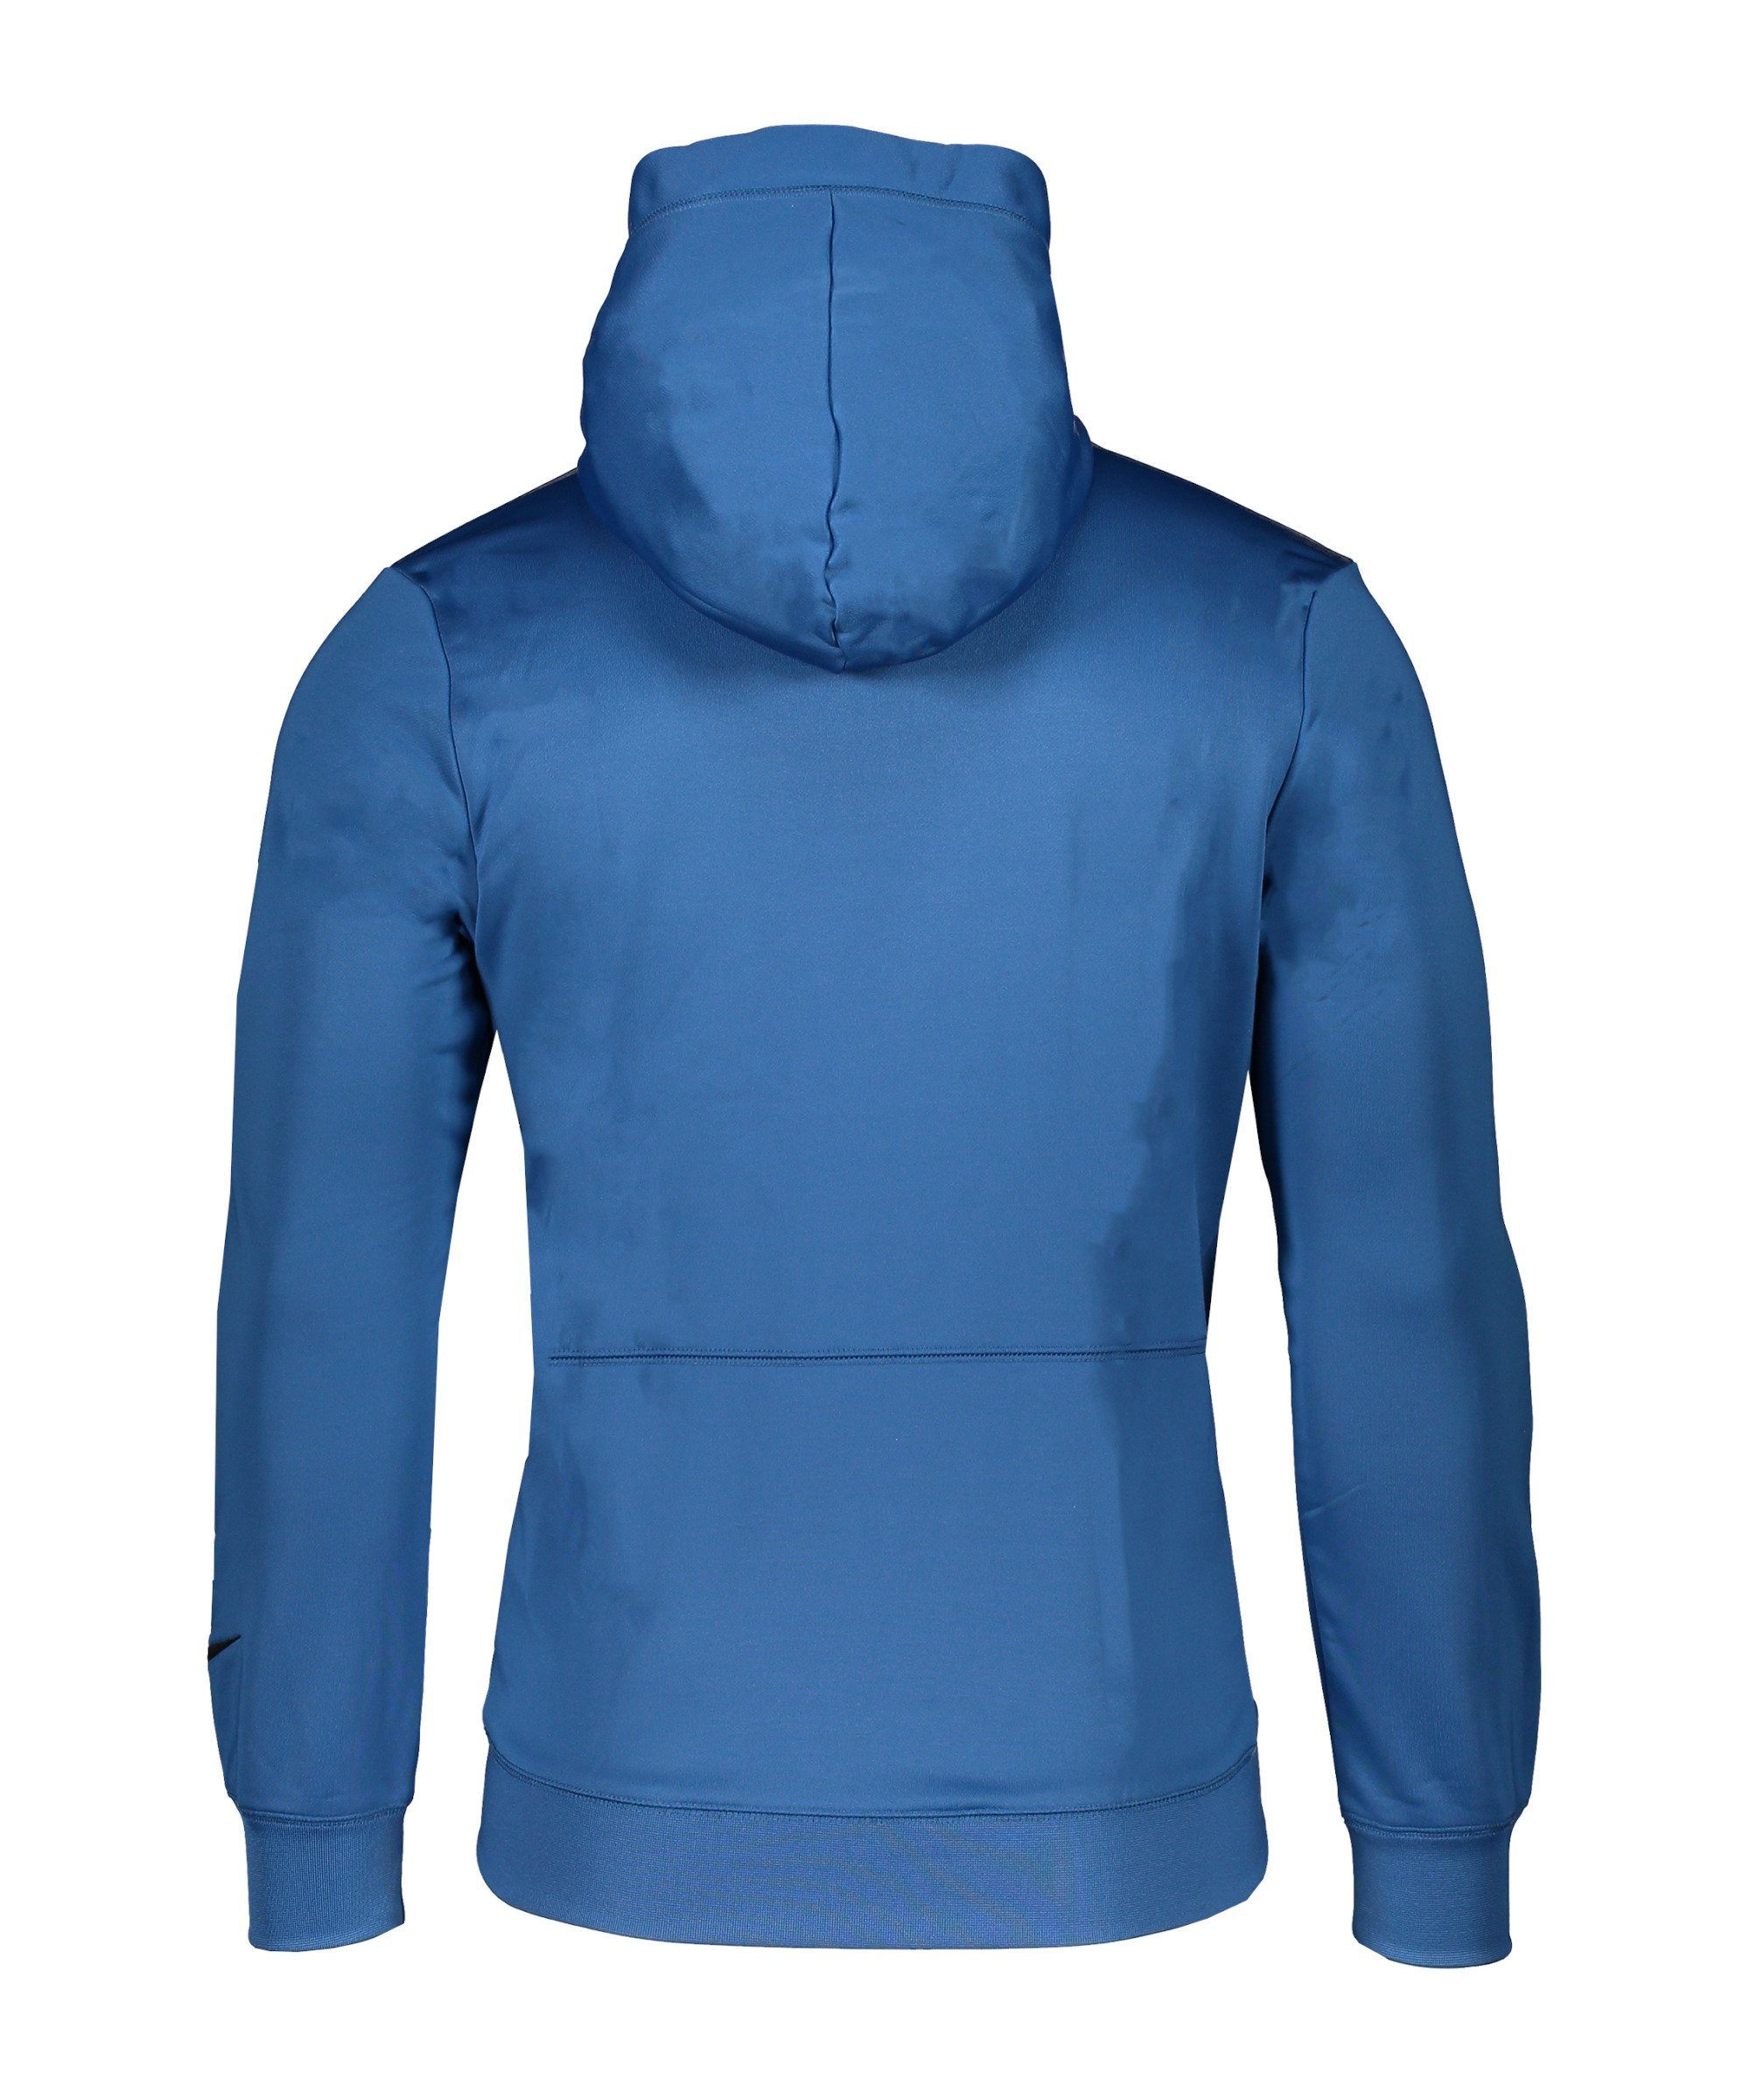 blauweissschwarz Hoody Sweatshirt Nike Sportswear F.C. Fleece